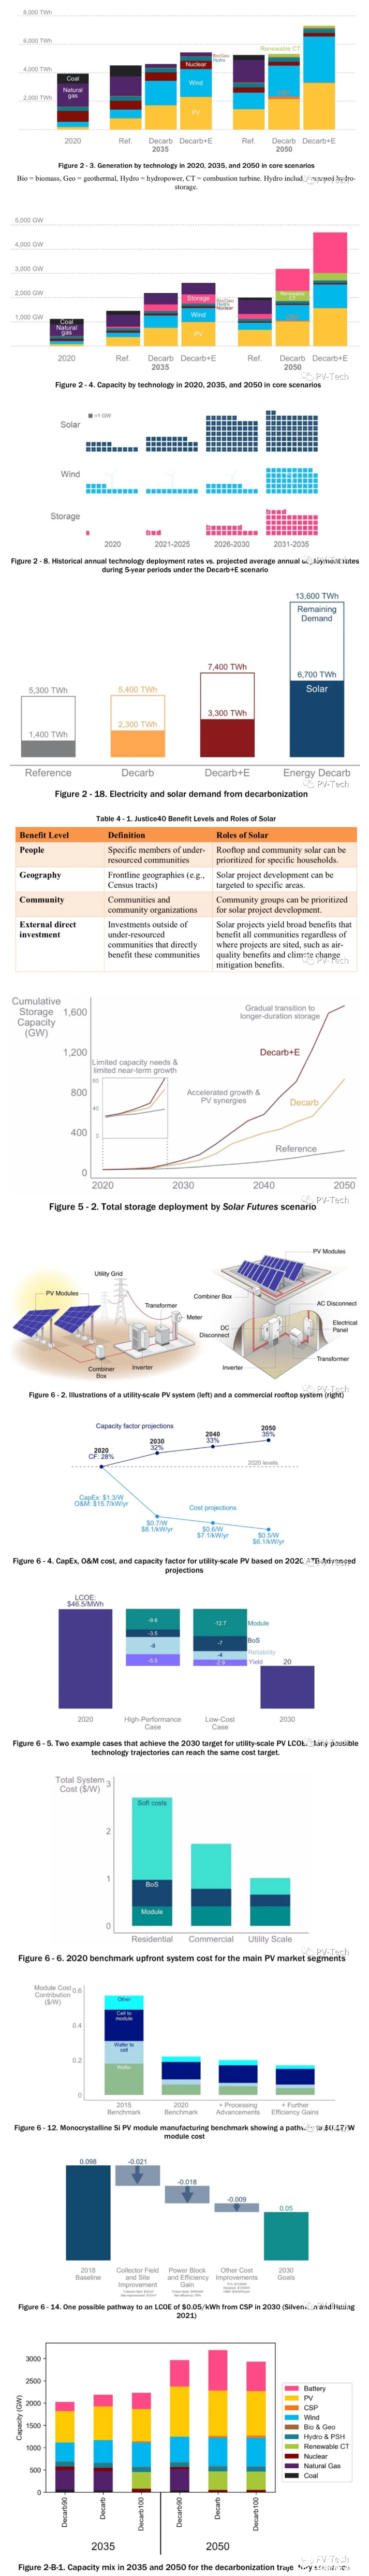 美国能源部：2035年太阳能有望供应40%电力 成最大电力来源